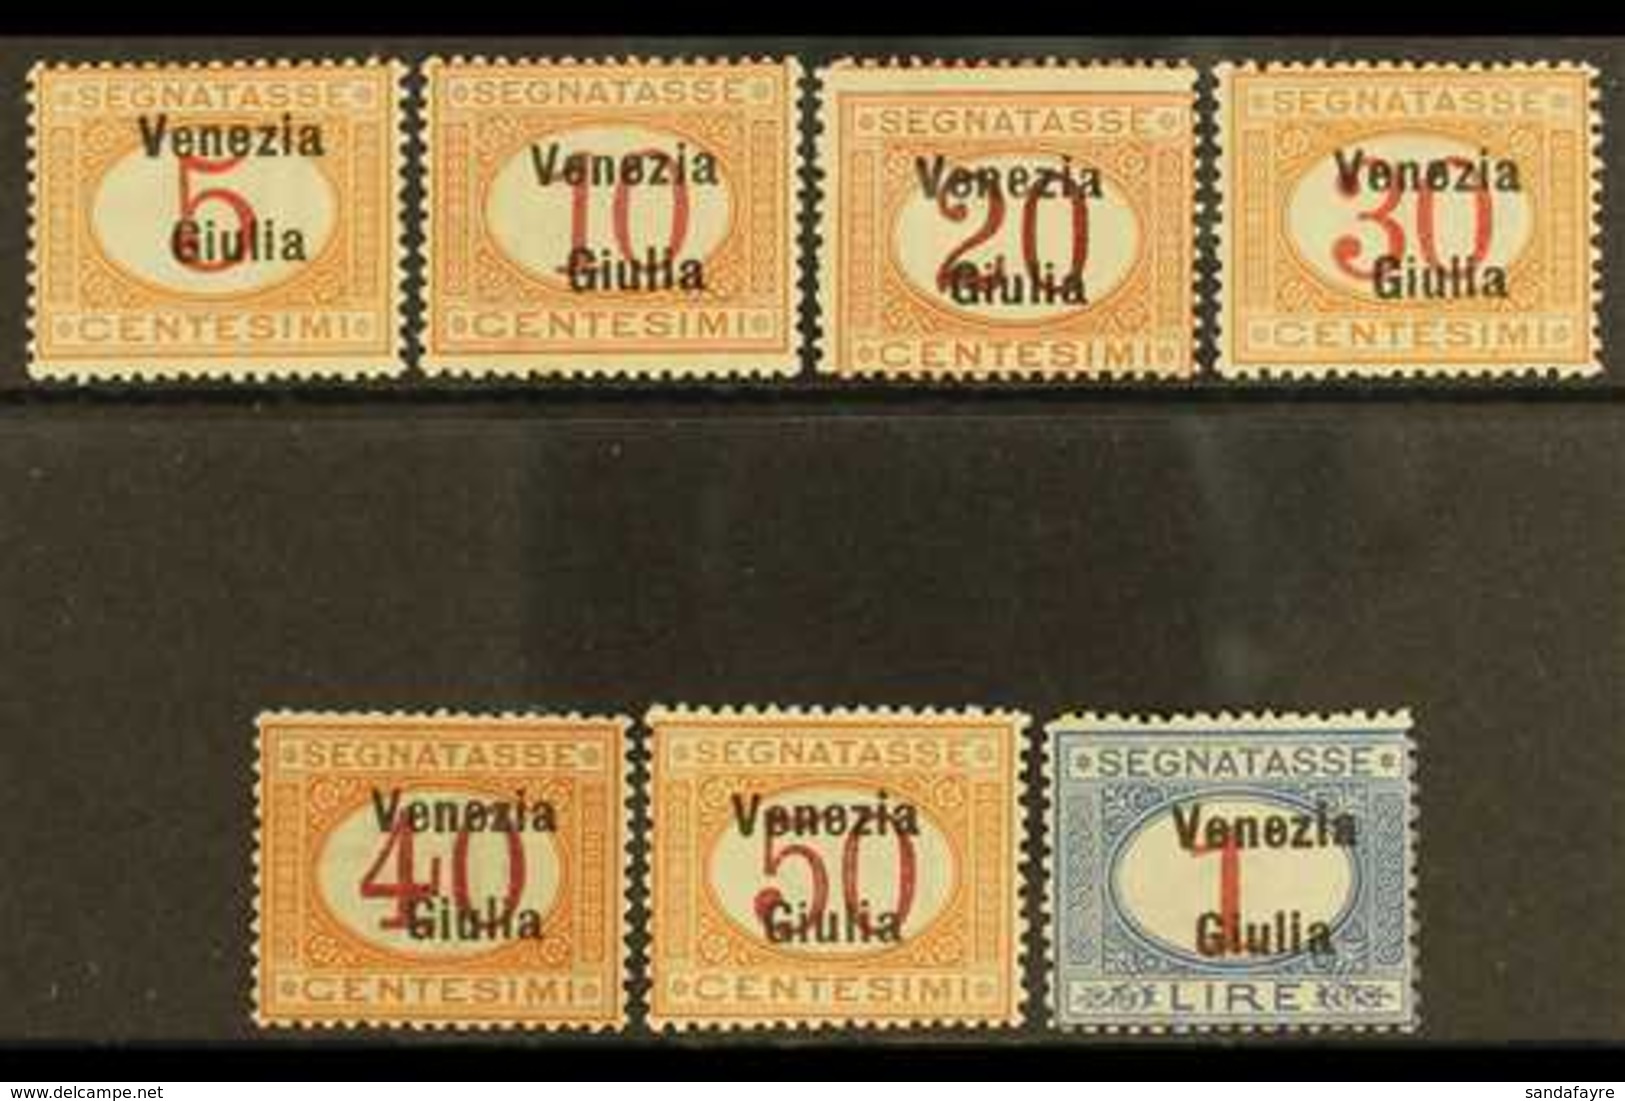 VENEZIA GIULIA POSTAGE DUES 1918 Overprint Set Complete, Sass S4, Very Fine Mint. Cat €1000 (£760) Rare Set. (7 Stamps)  - Non Classés